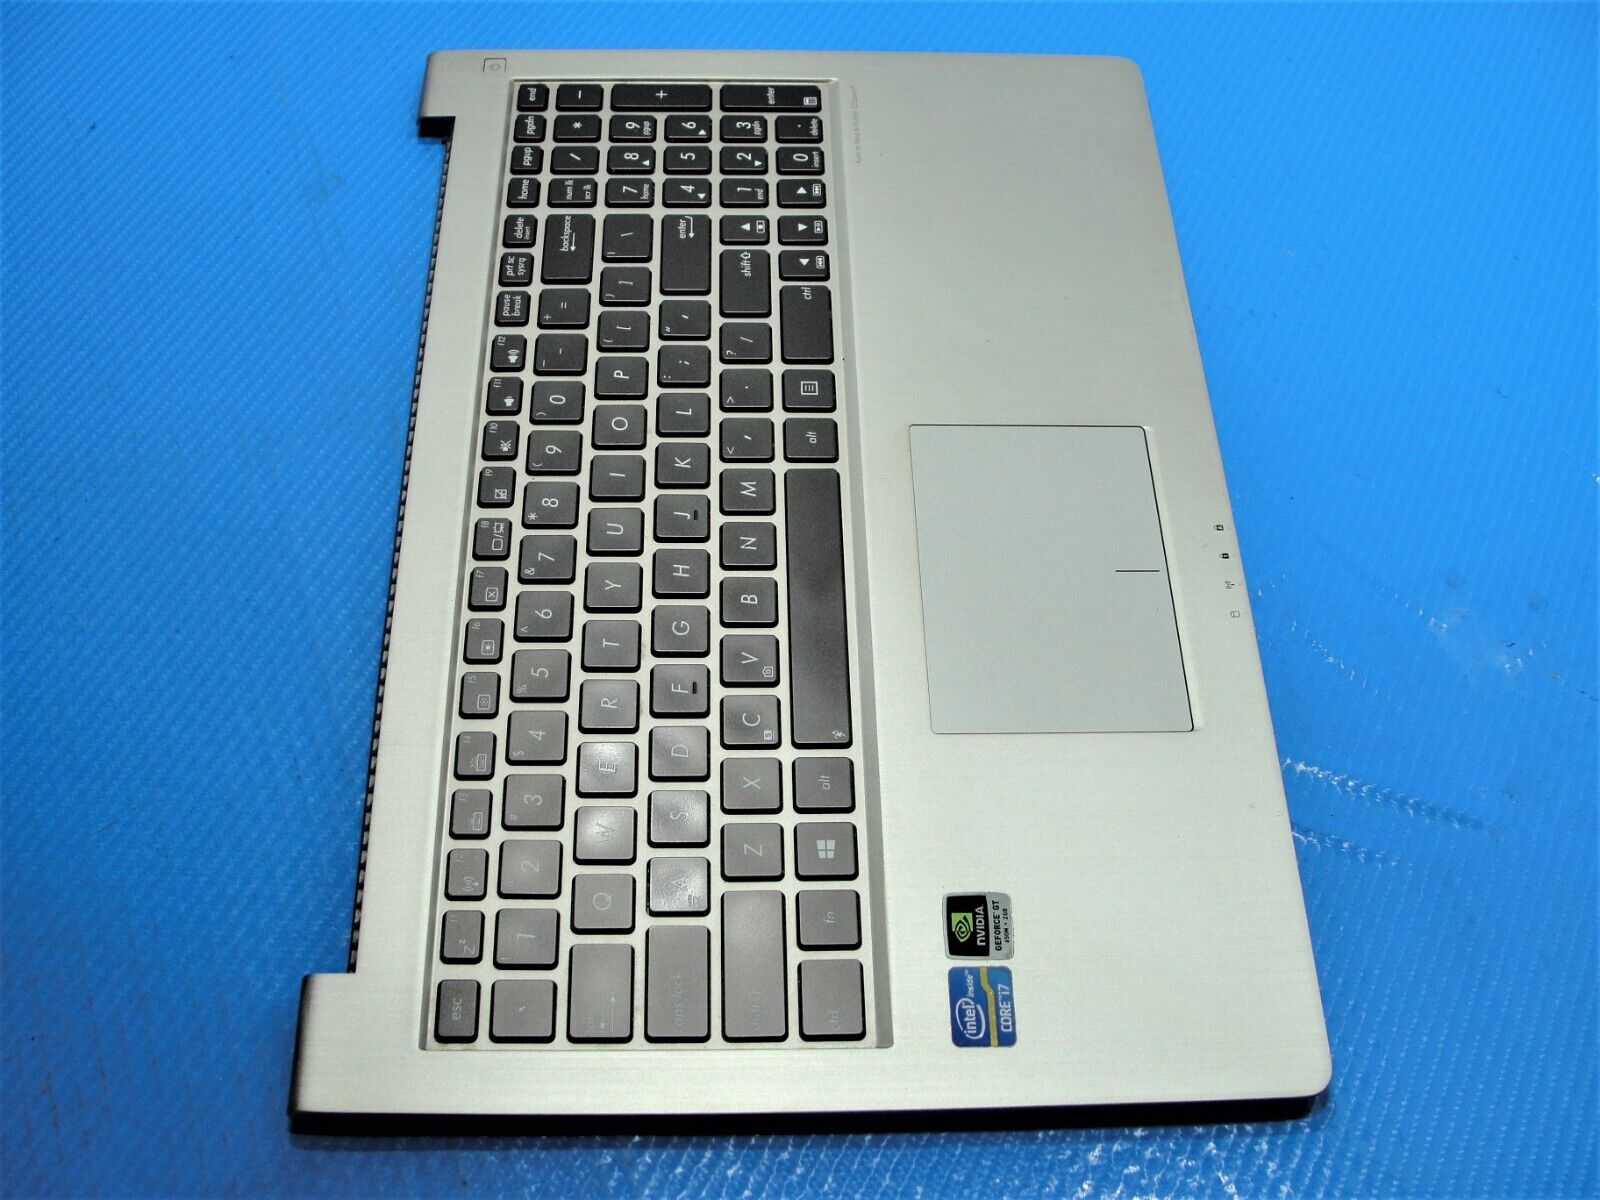 Asus ZenBook 15.6